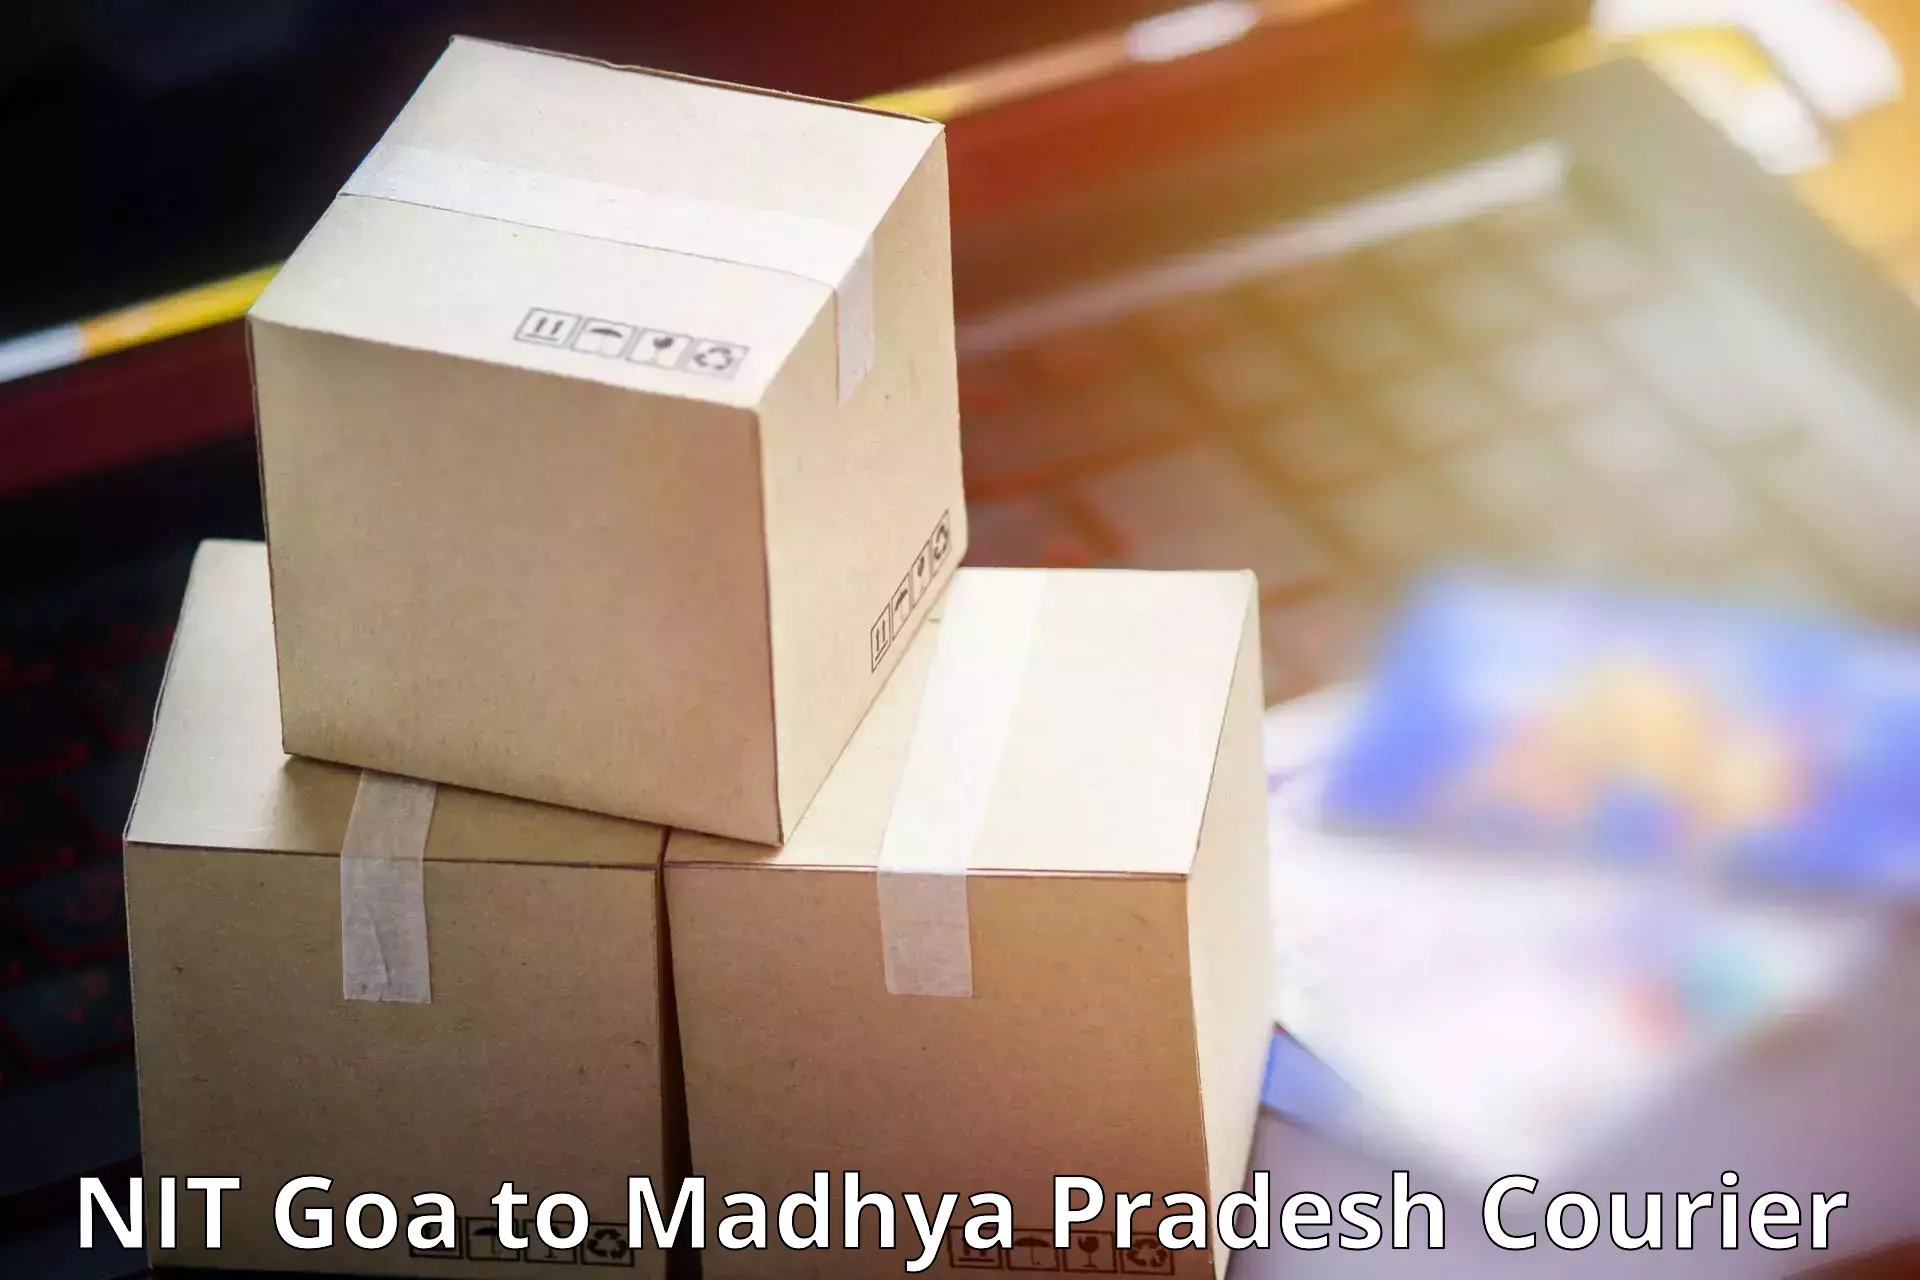 Custom courier strategies NIT Goa to Madhya Pradesh